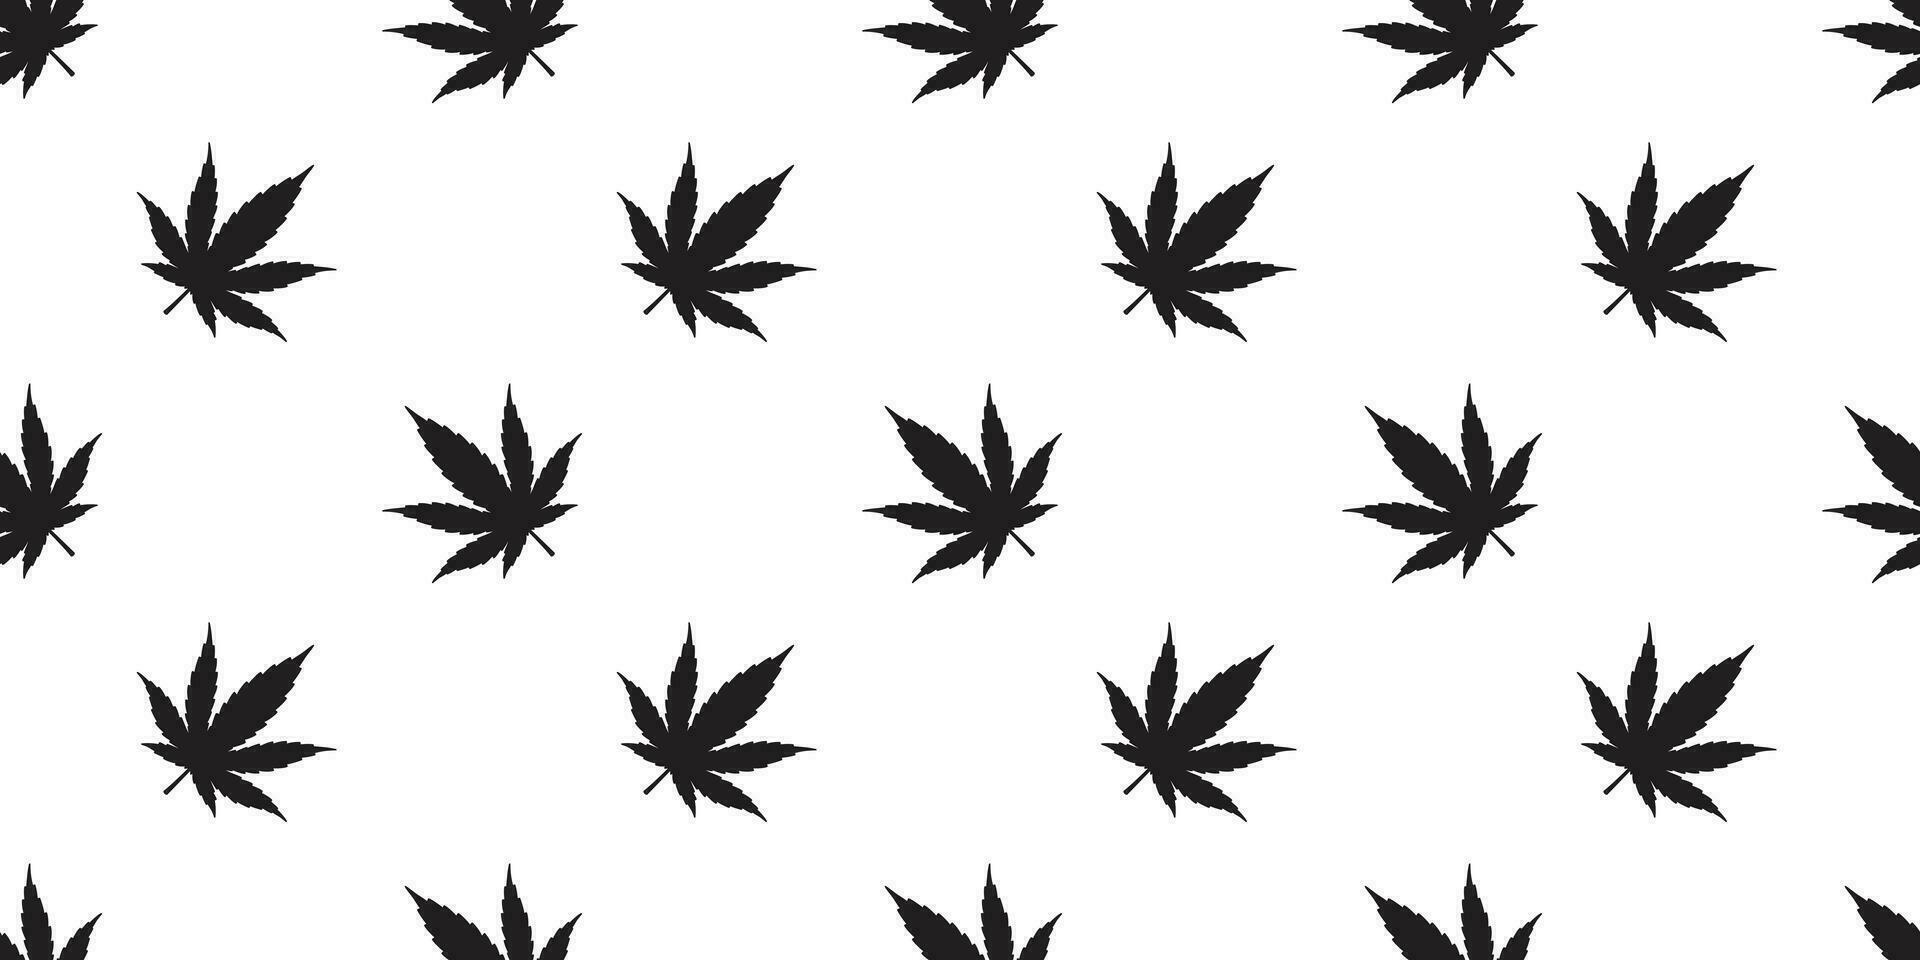 maconha erva daninha desatado padronizar vetor cannabis folha repetir papel de parede telha fundo cachecol isolado plantar